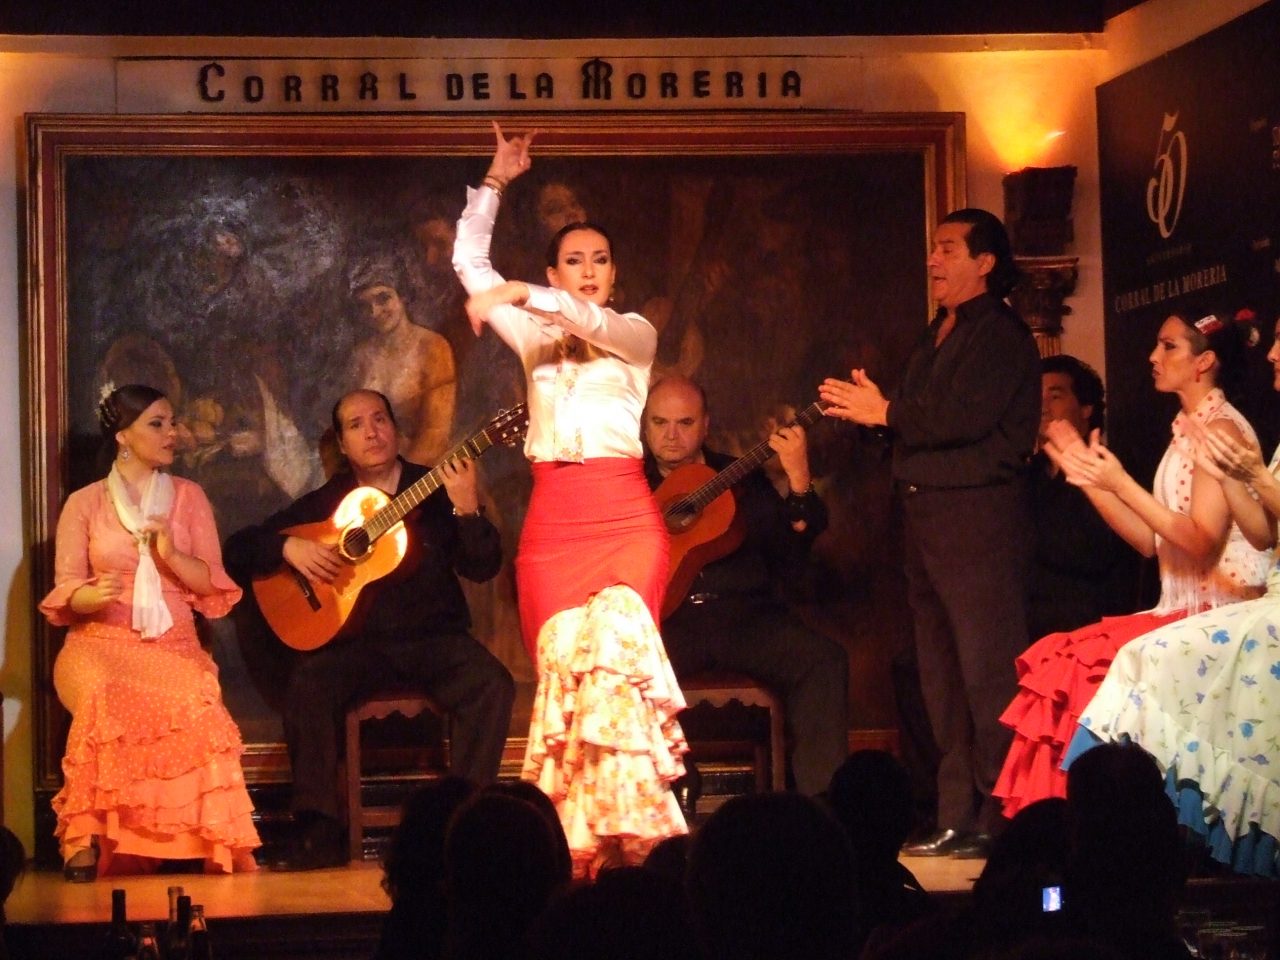 Ivana Dukčević - Tablao flamenco Corral de la Moreria, Madrid (4)